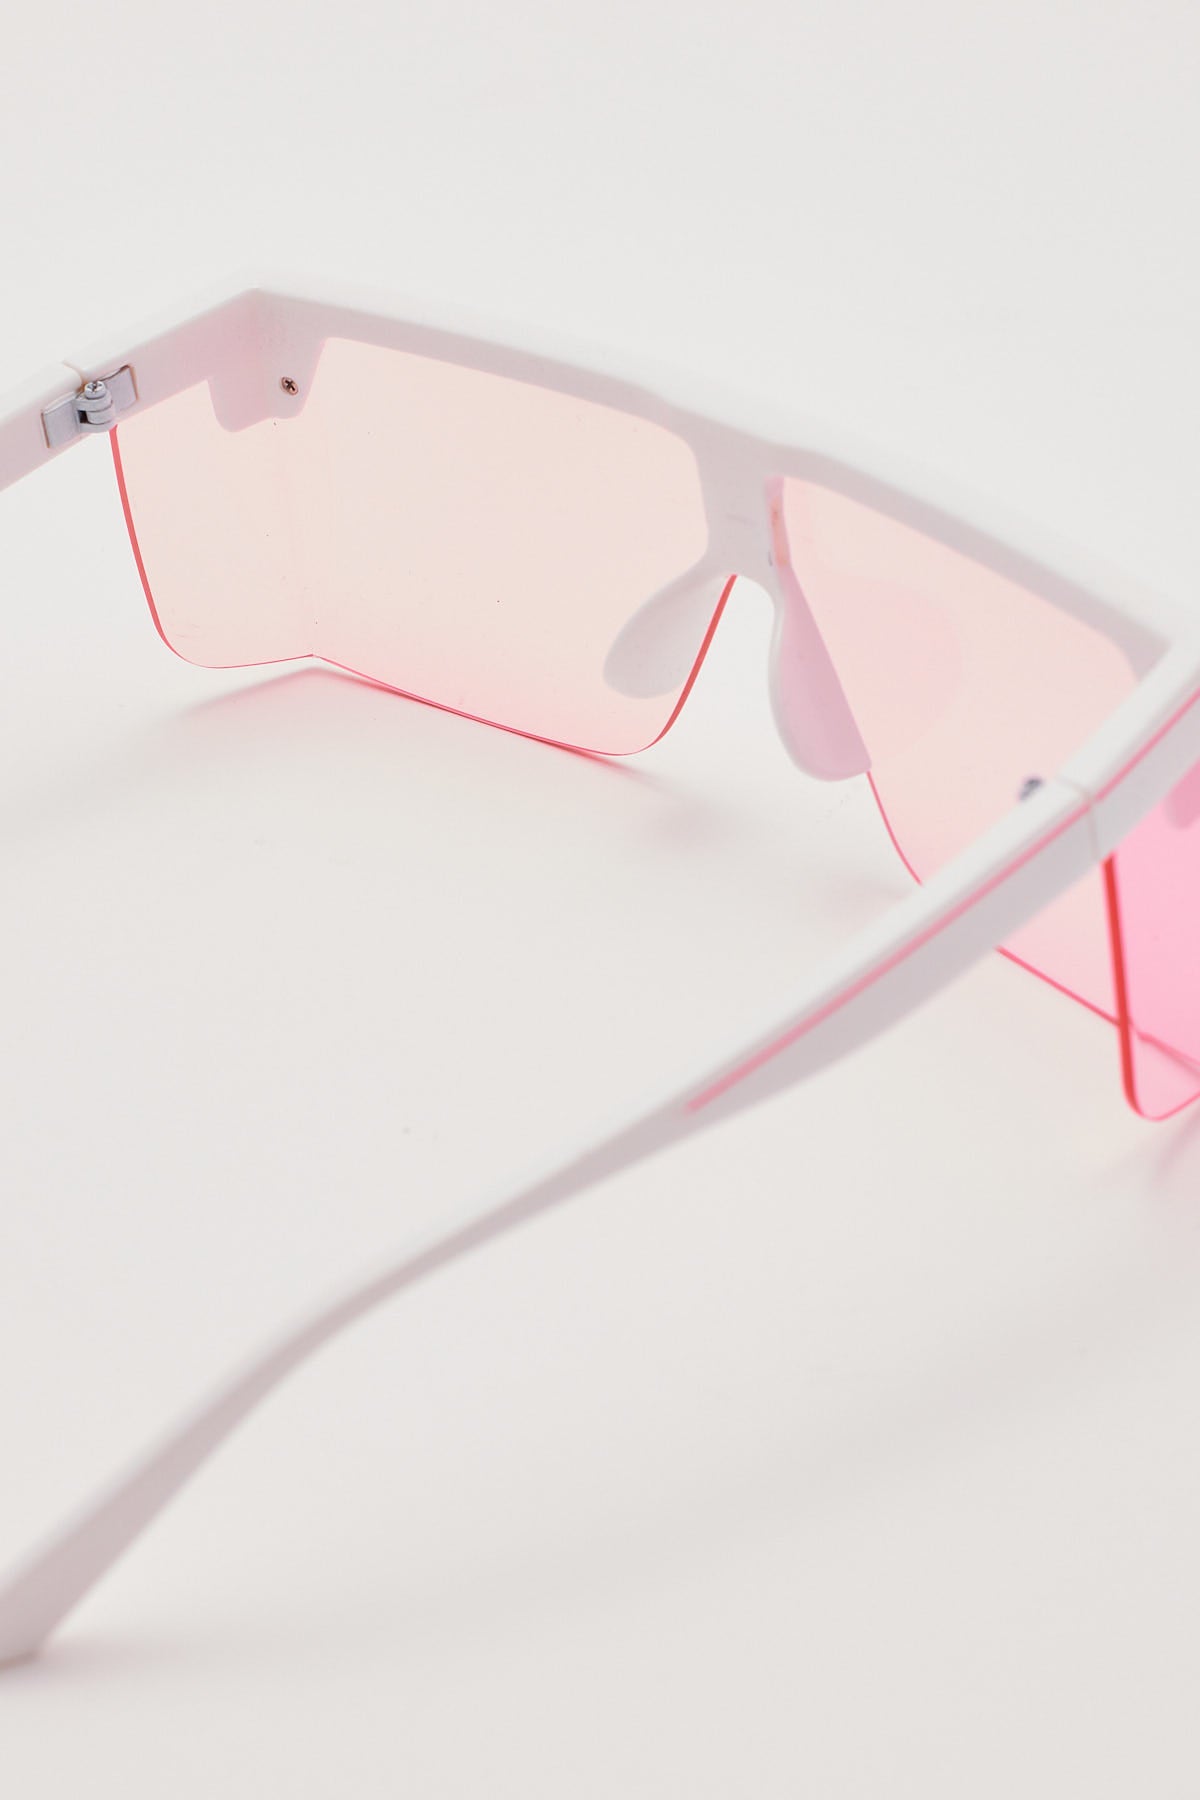 Unity Eyewear Garage Pink/White